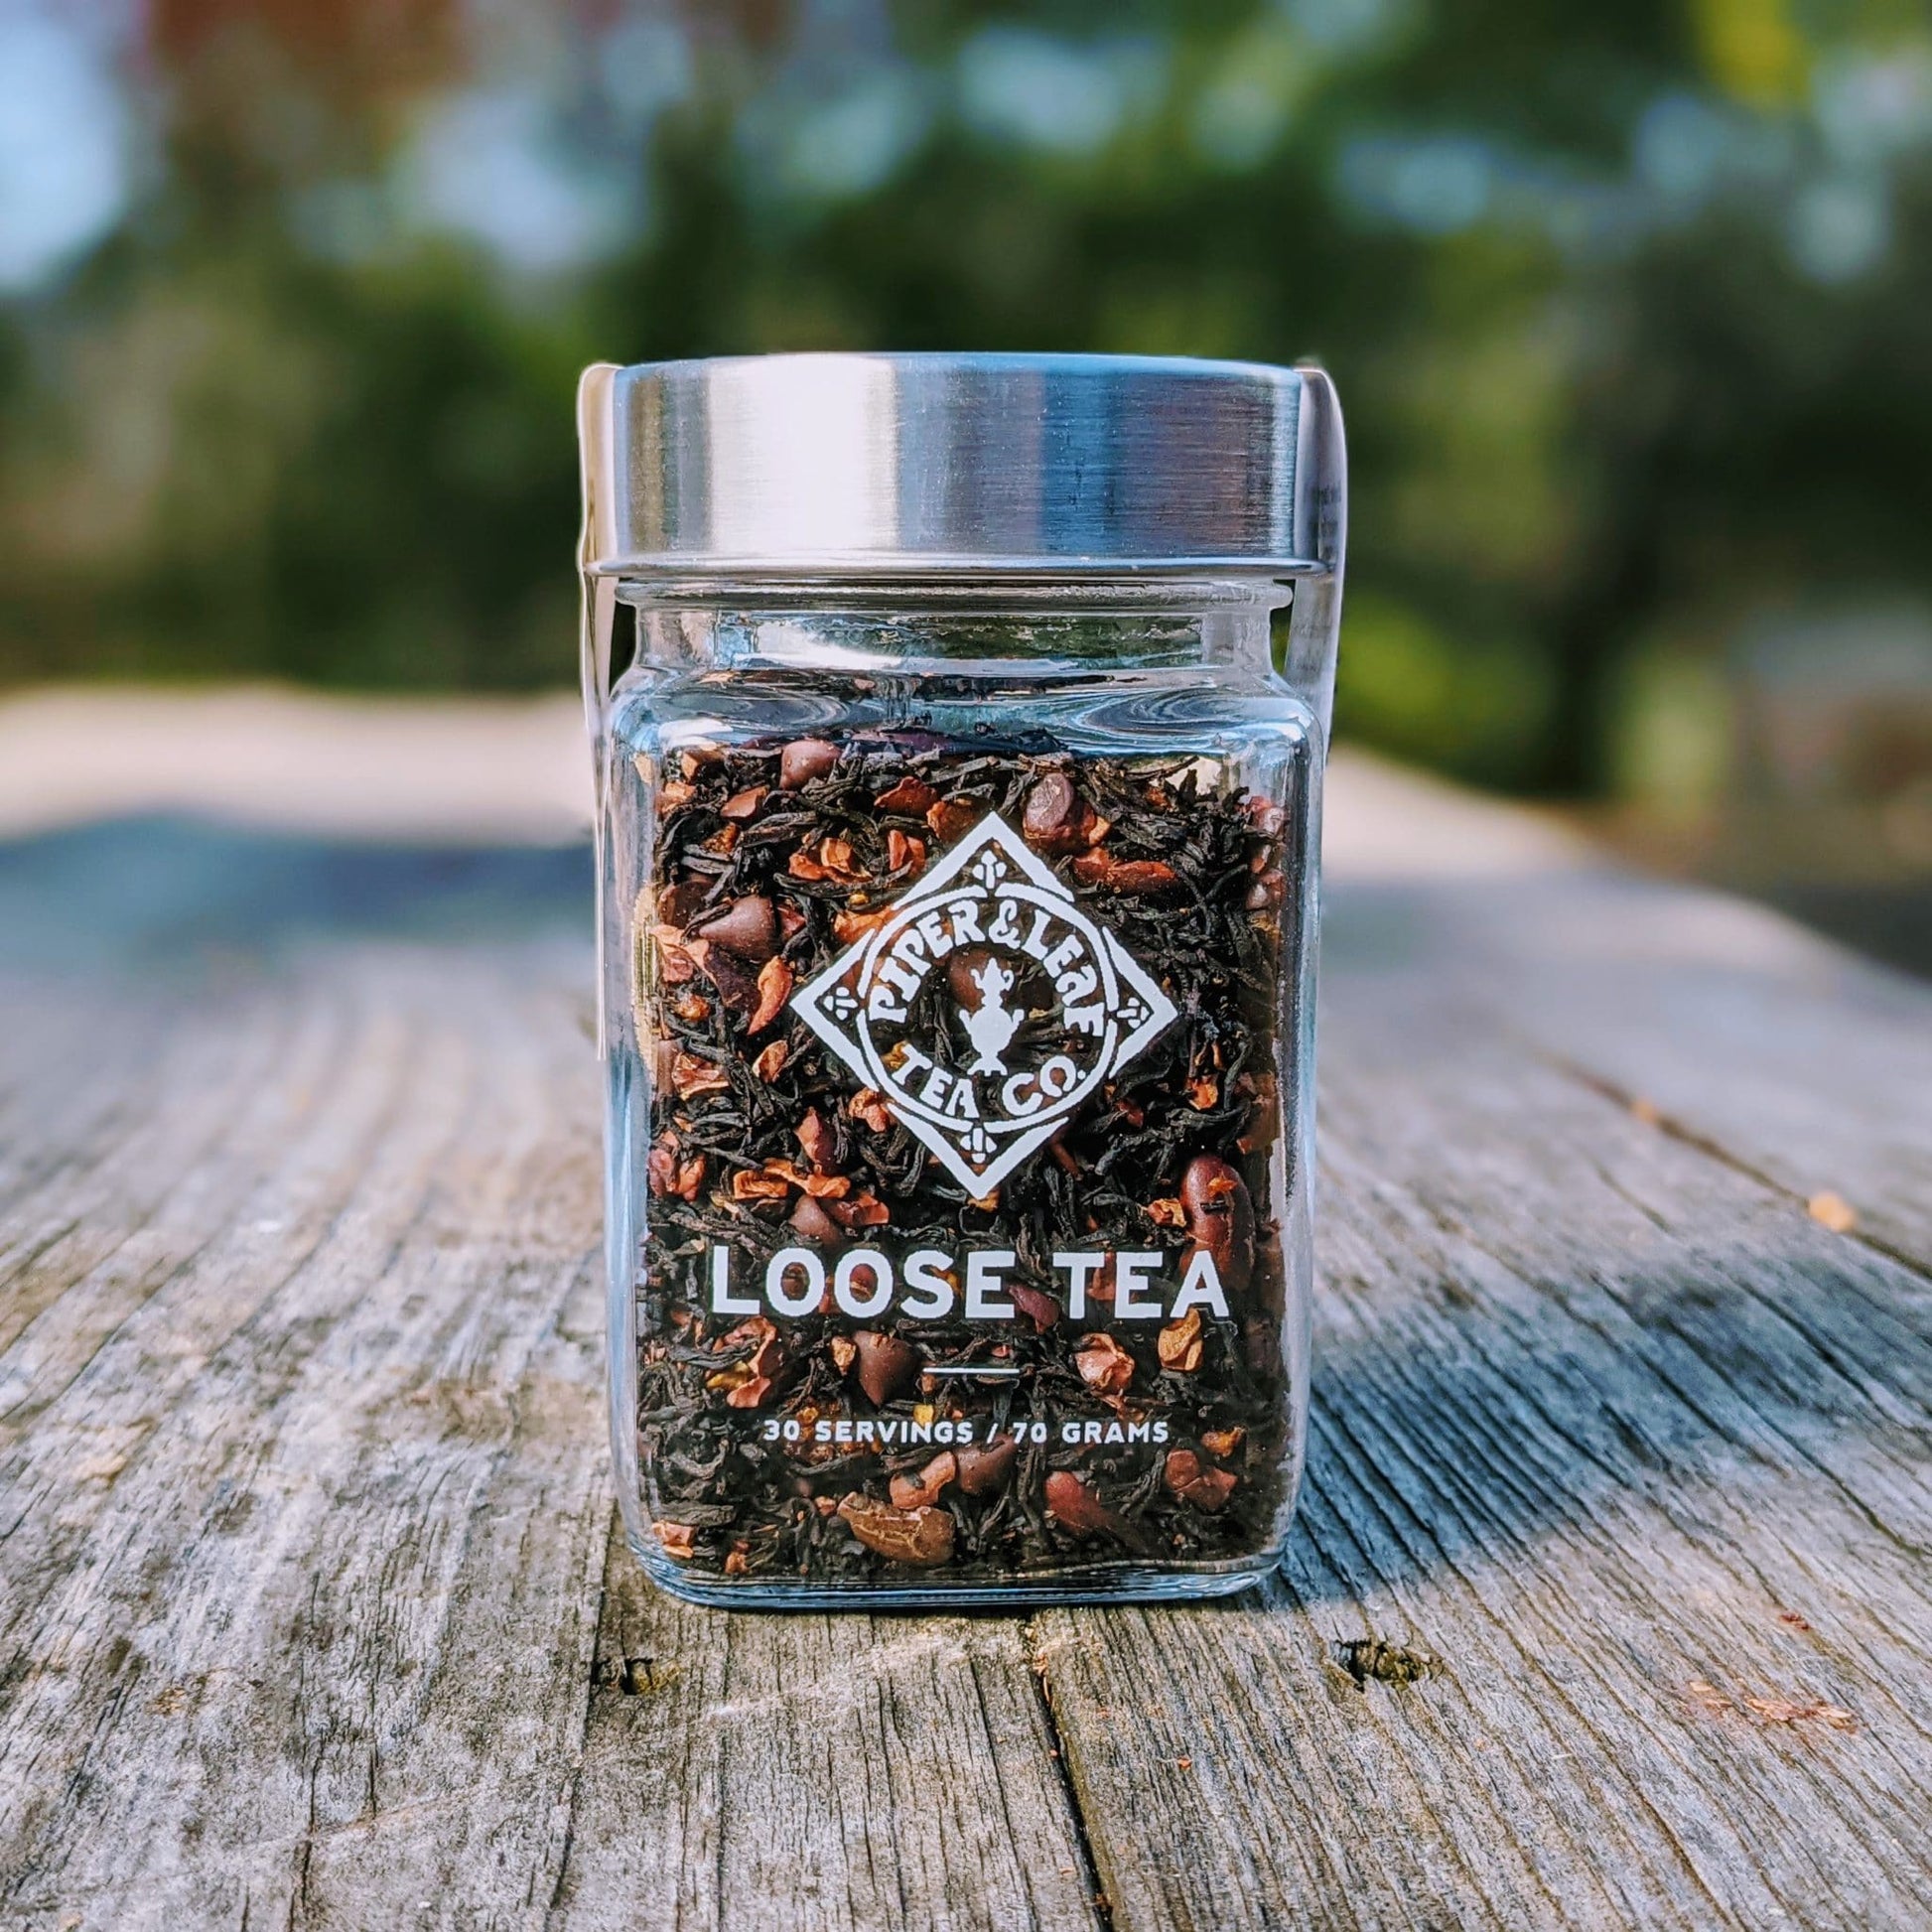 Chocola-Tea glass jar of loose leaf